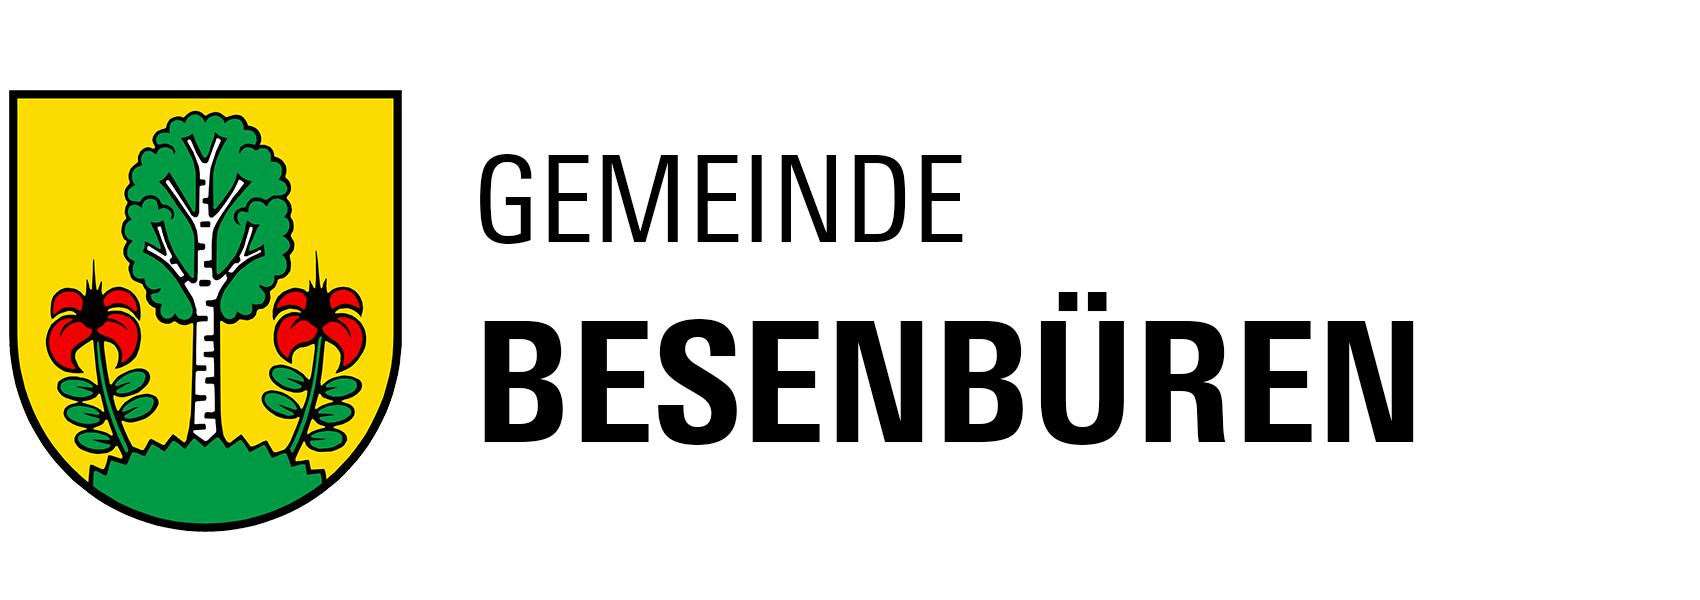 Gemeinde Besenbüren